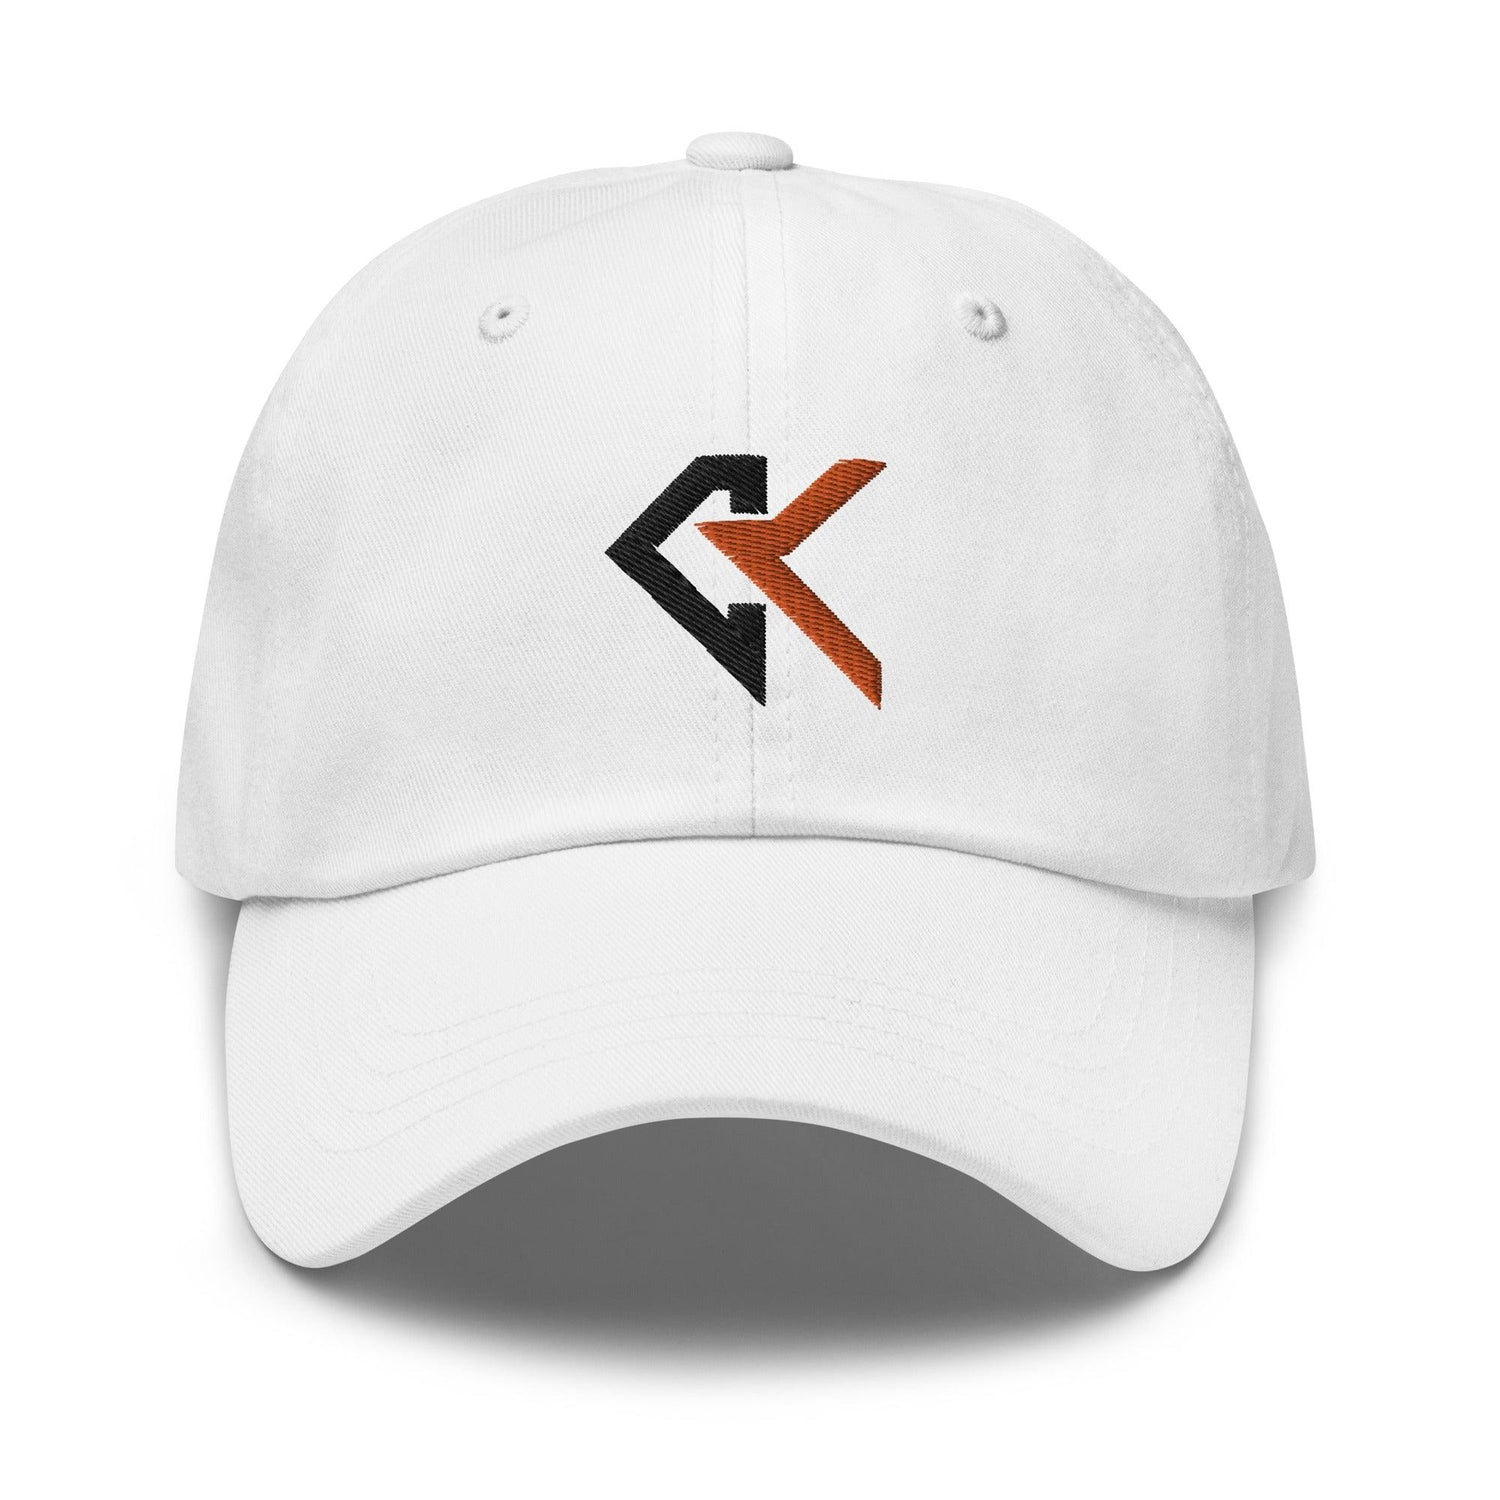 Cade Kuehler “CK” hat - Fan Arch